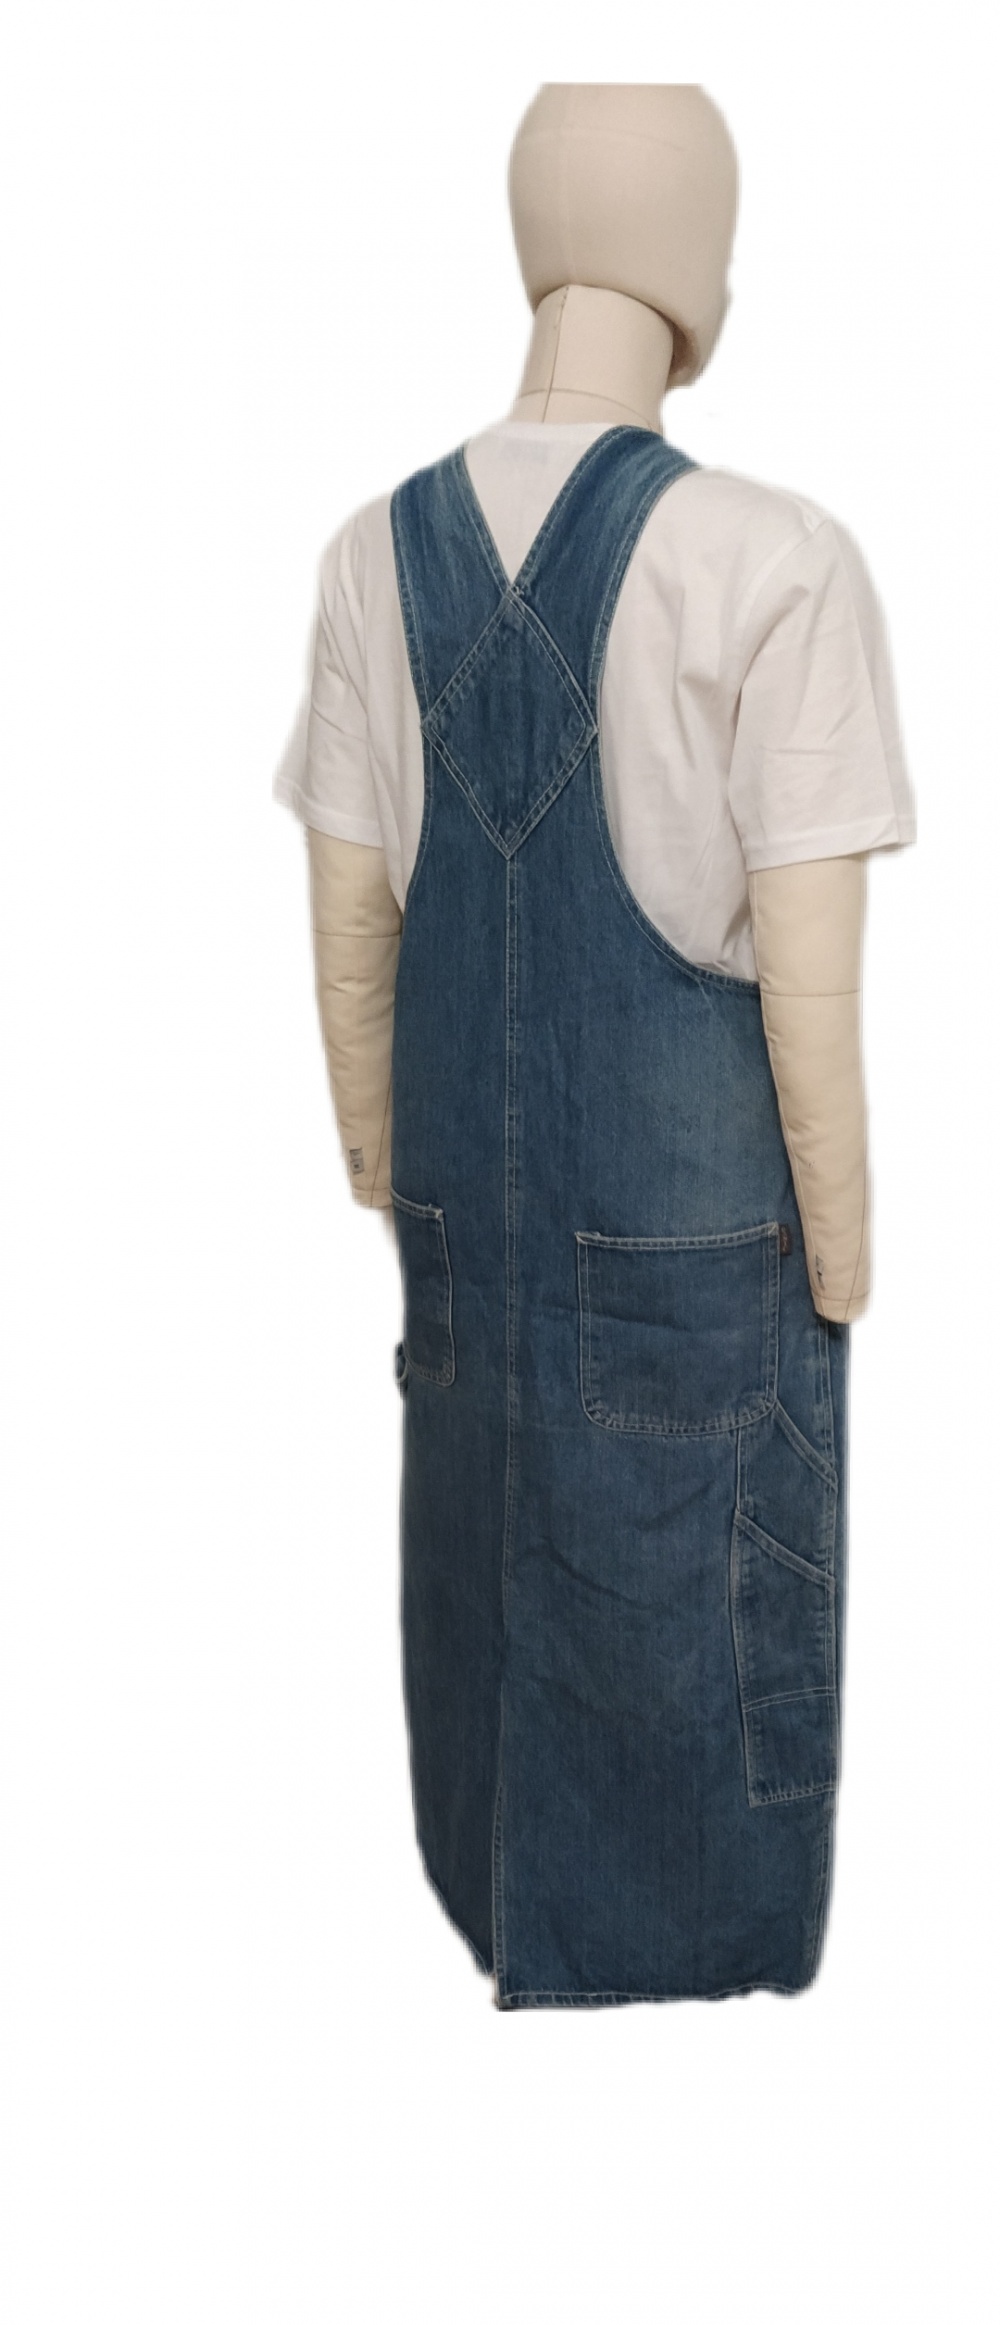 Джинсовый сарафан Street Jeans, L, XL